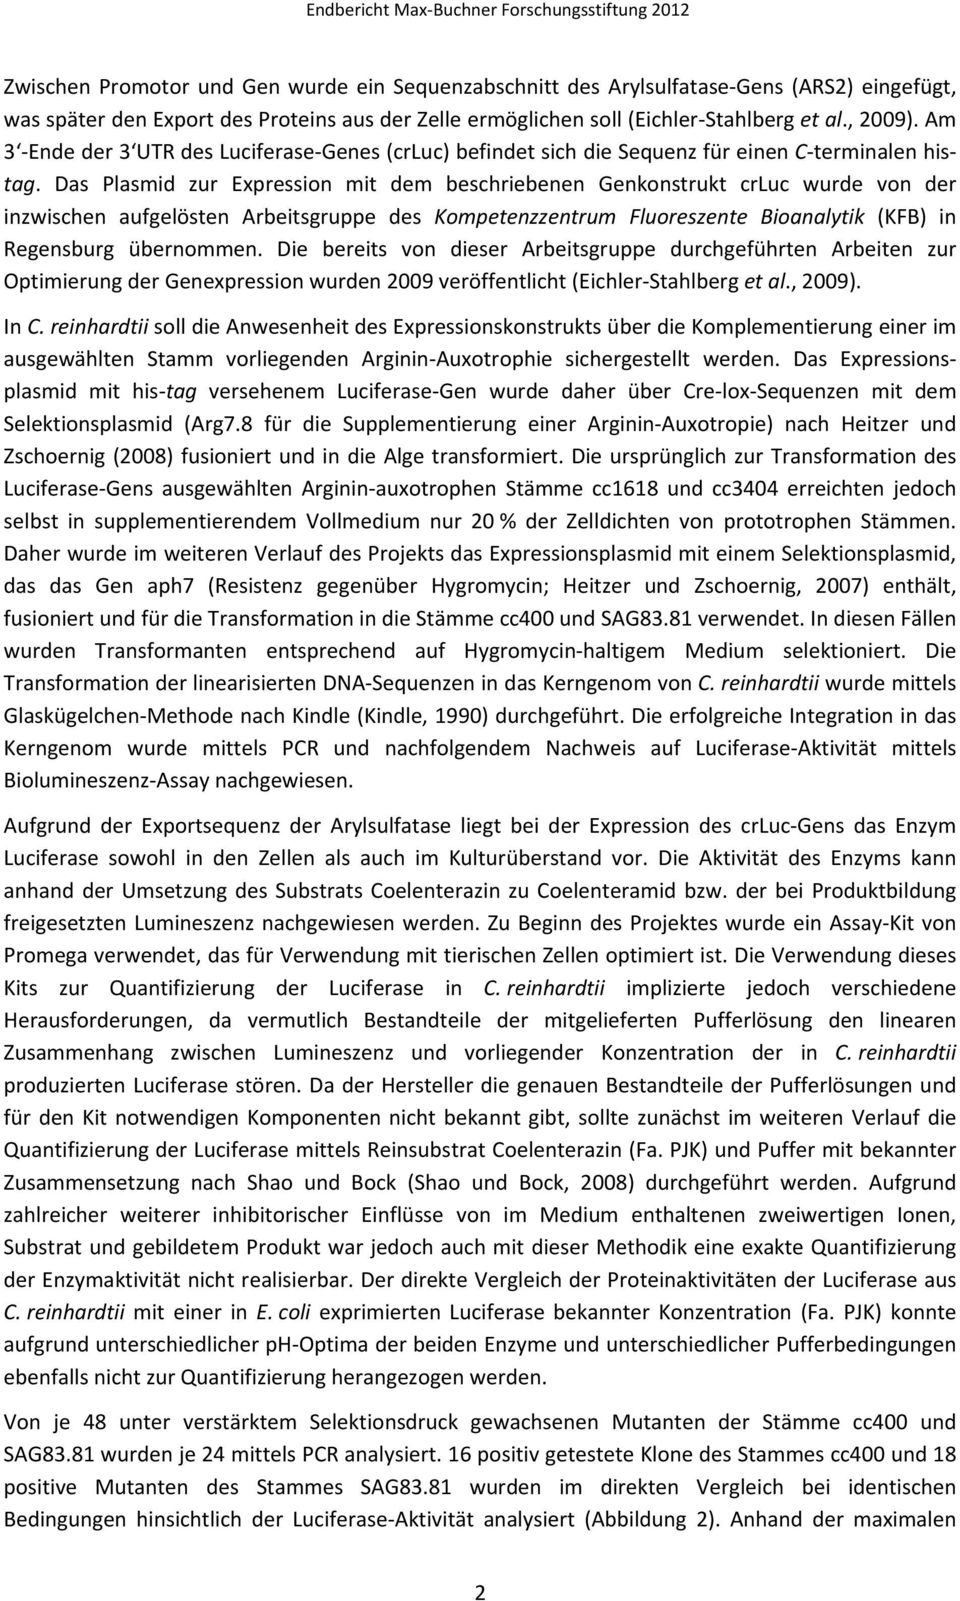 Das Plasmid zur Expression mit dem beschriebenen Genkonstrukt crluc wurde von der inzwischen aufgelösten Arbeitsgruppe des Kompetenzzentrum Fluoreszente Bioanalytik (KFB) in Regensburg übernommen.